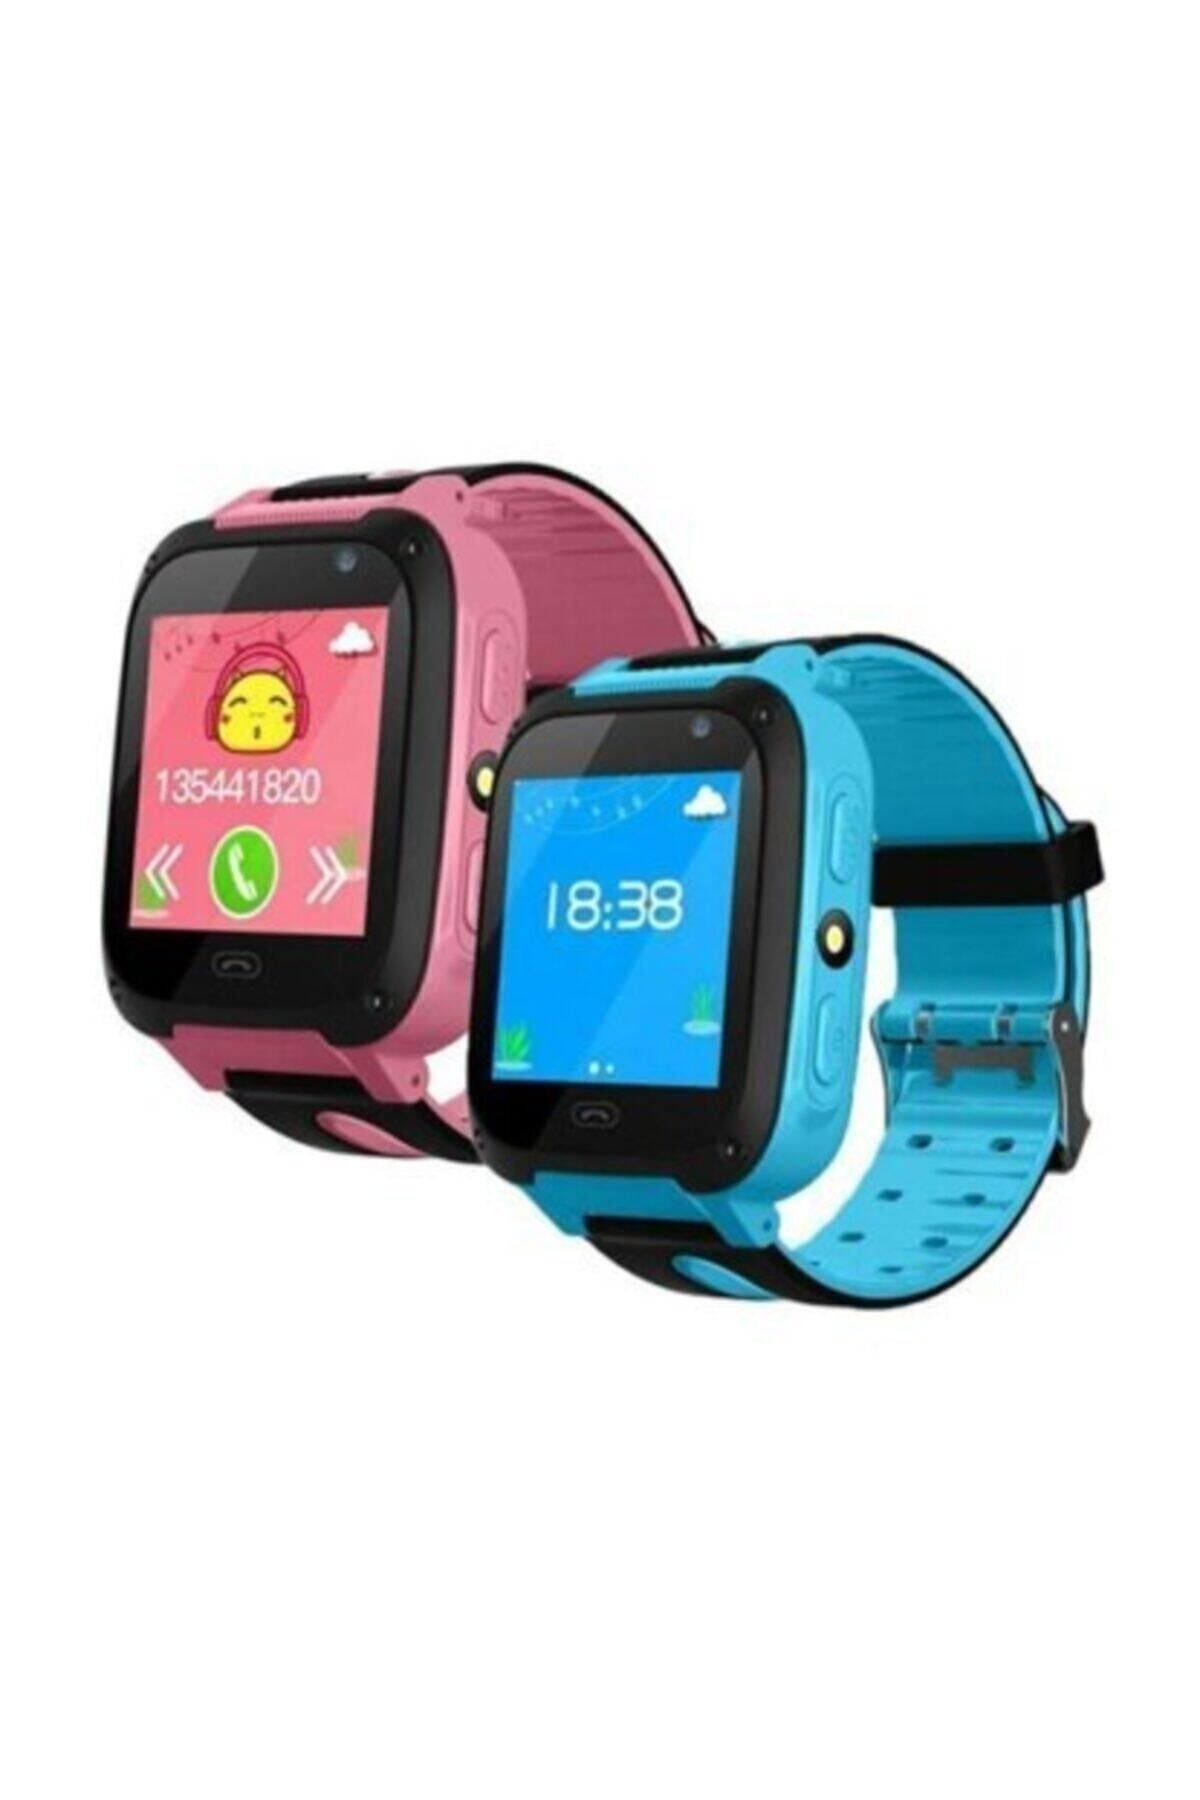 Smart Akıllı Saat - Çocuk Takip Saati - Gps - Sim Kartlı Arama- Kameralı Watch2030